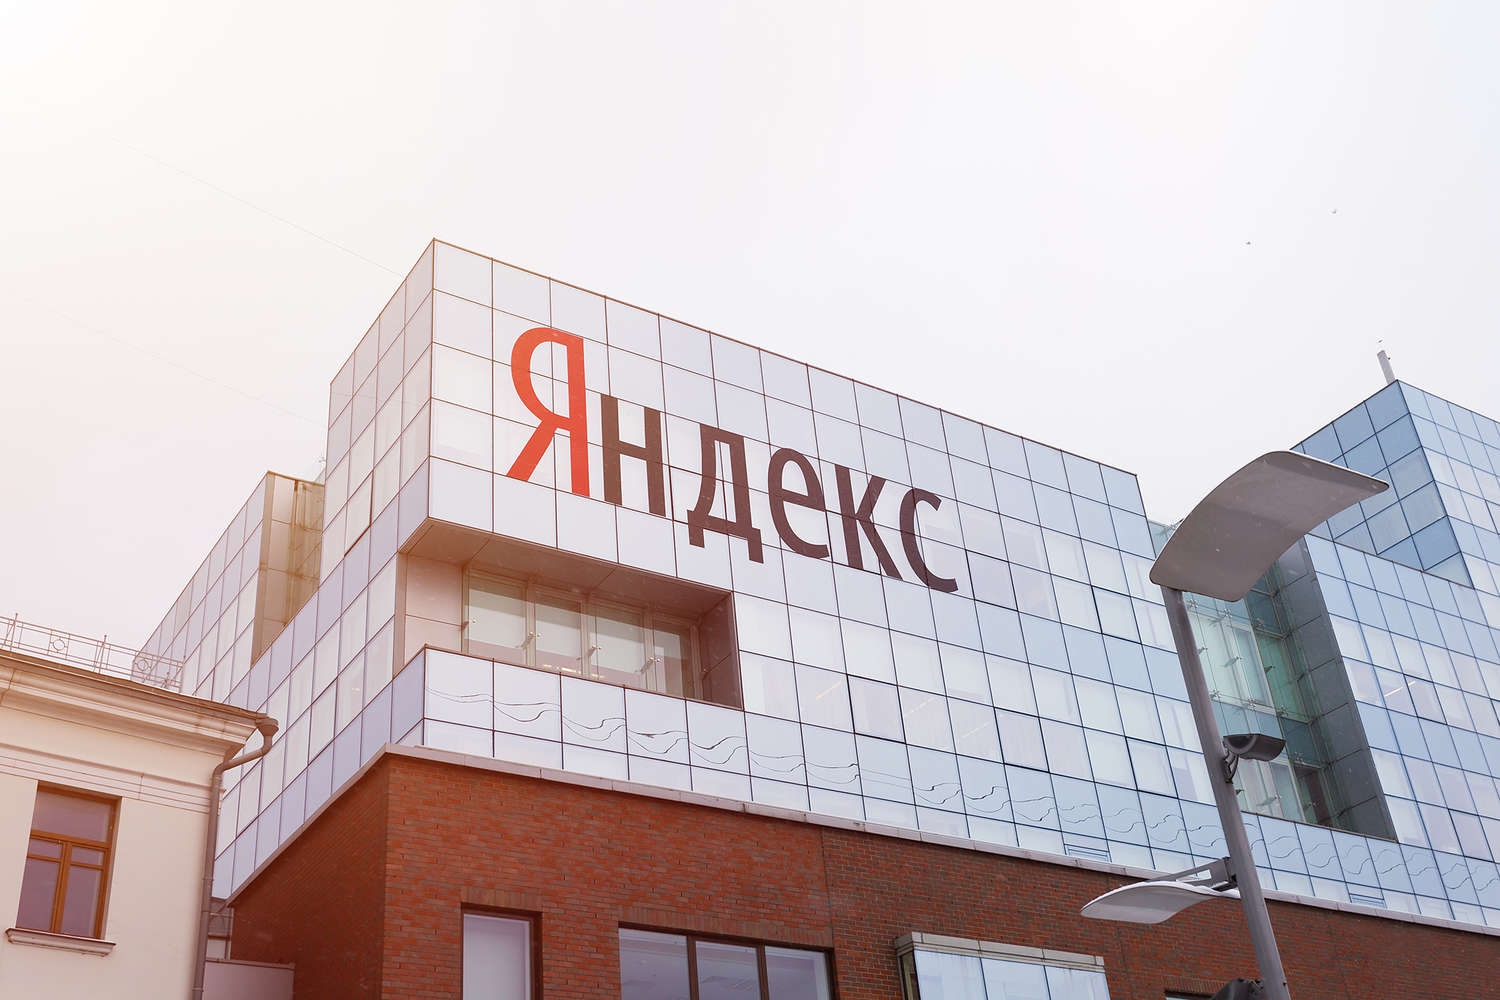 Суд отказал «Яндексу» в аресте средств A&DD на сумму в 891 млн рублей